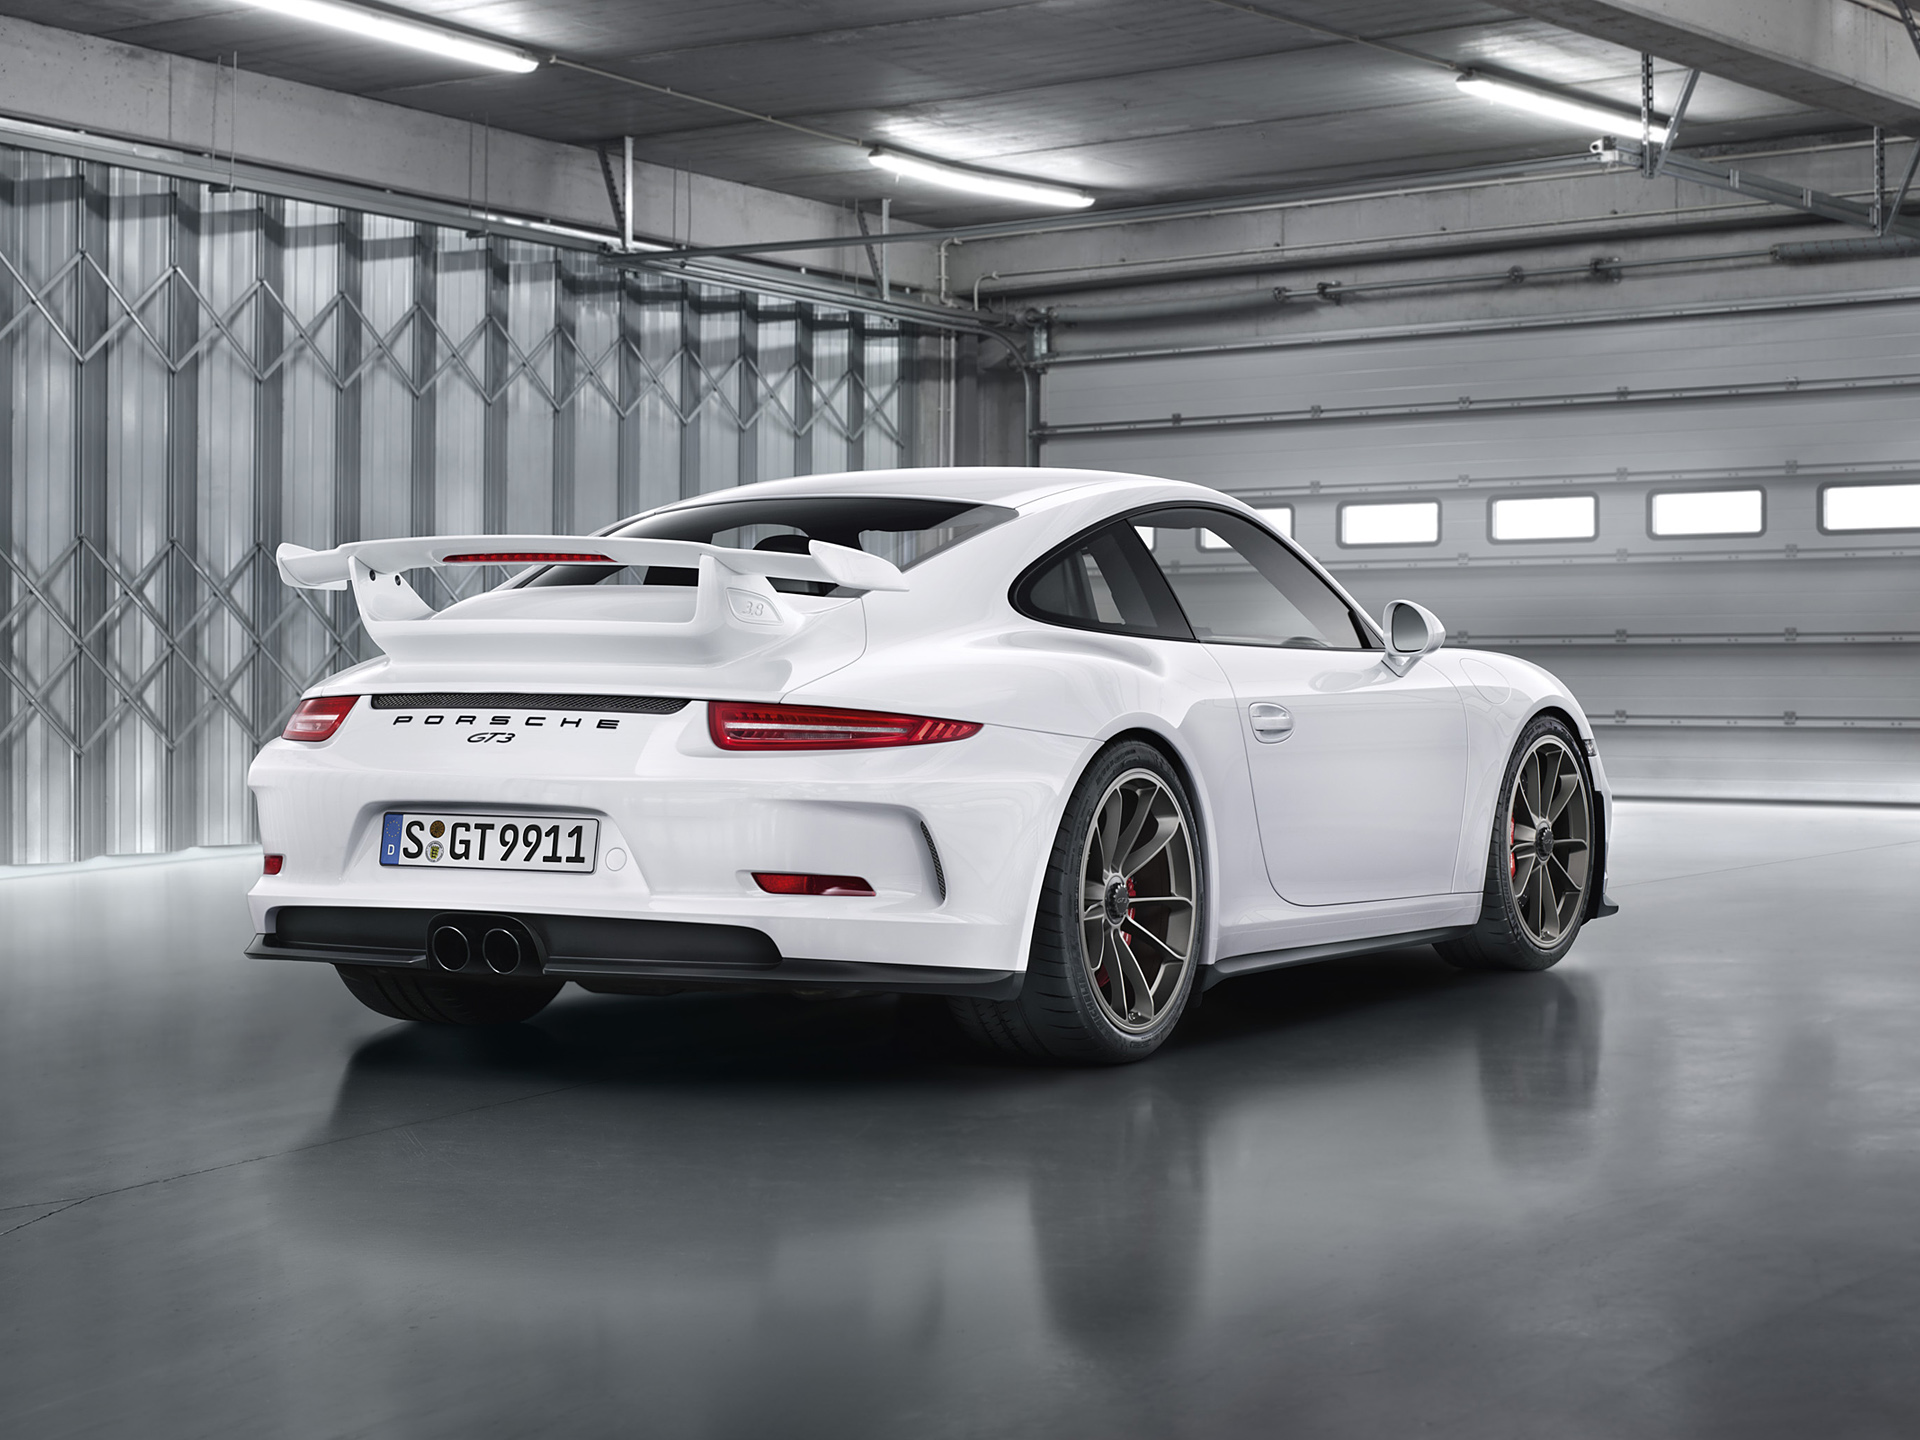  2014 Porsche 911 GT3 Wallpaper.